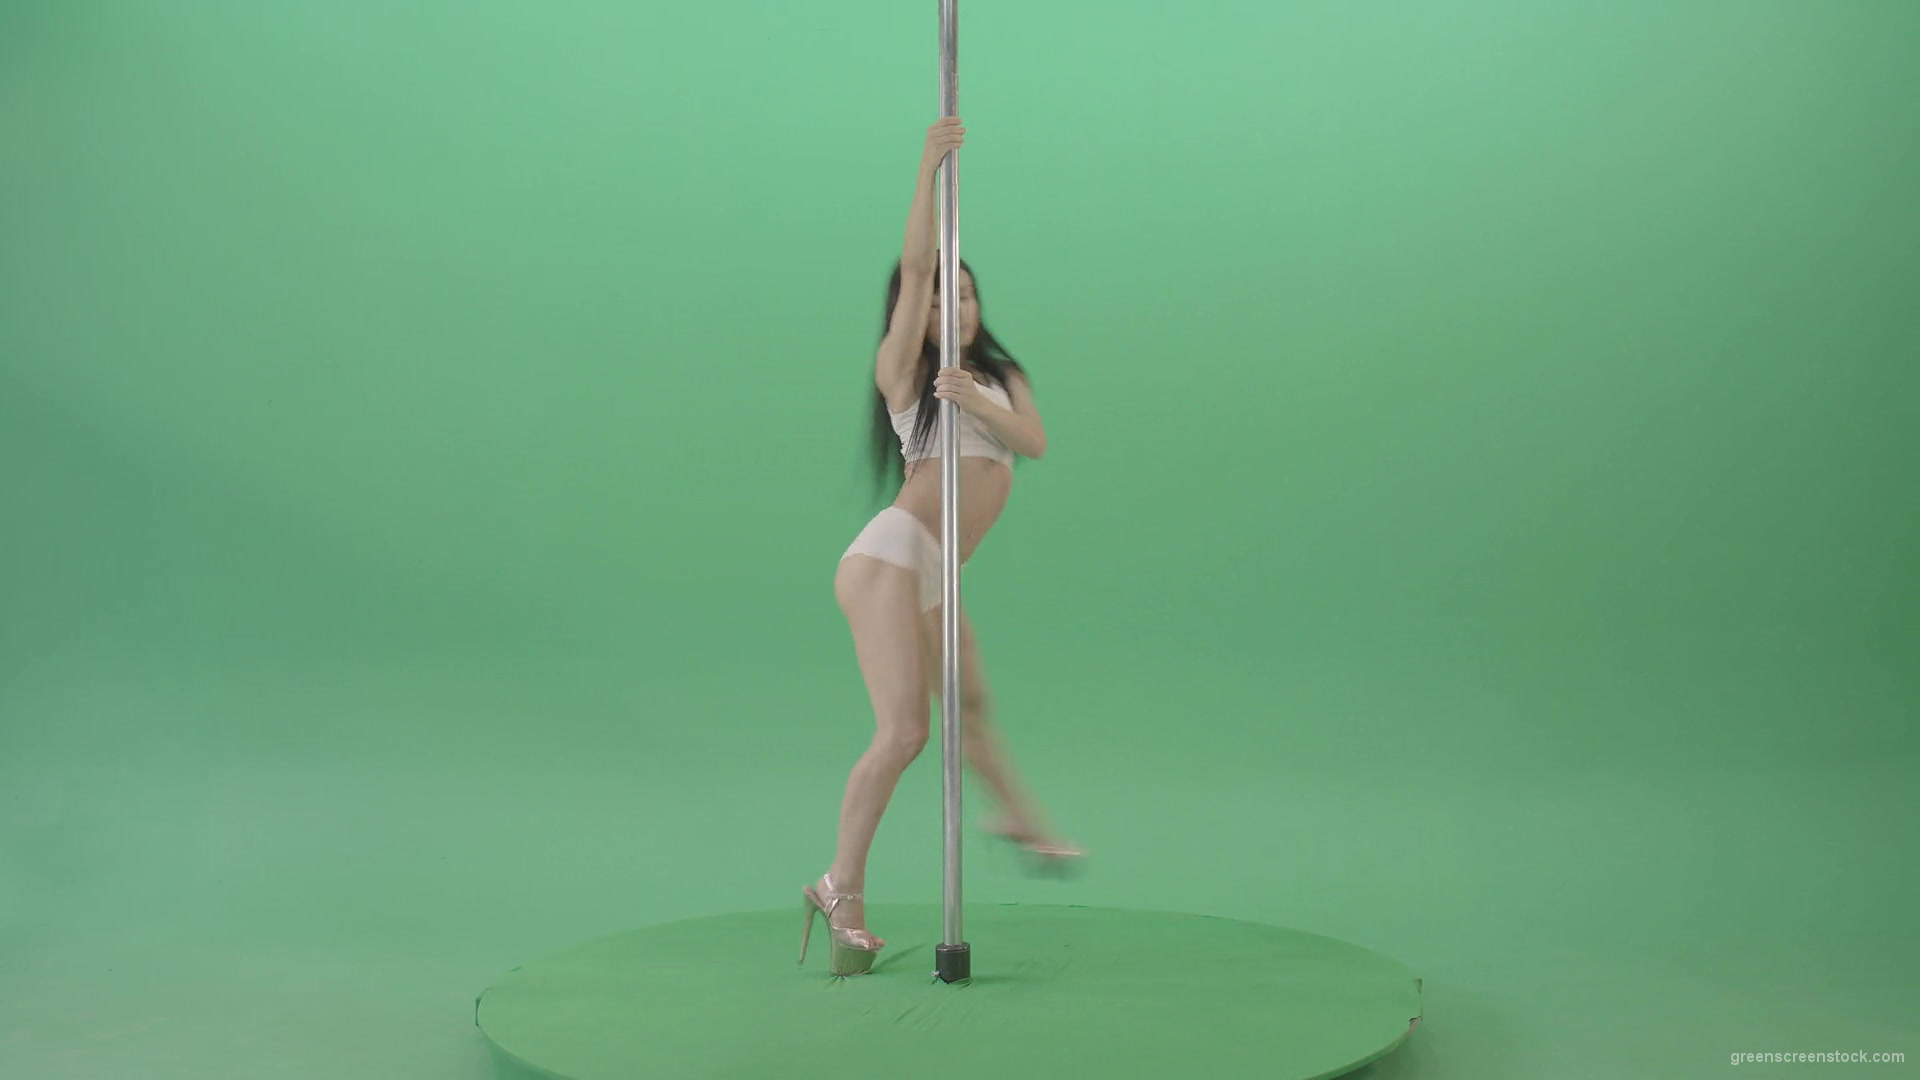 Dancing-GIrl-walking-arround-Pole-in-strip-white-underwear-on-green-screen-4K-Video-Footage-1920_009 Green Screen Stock